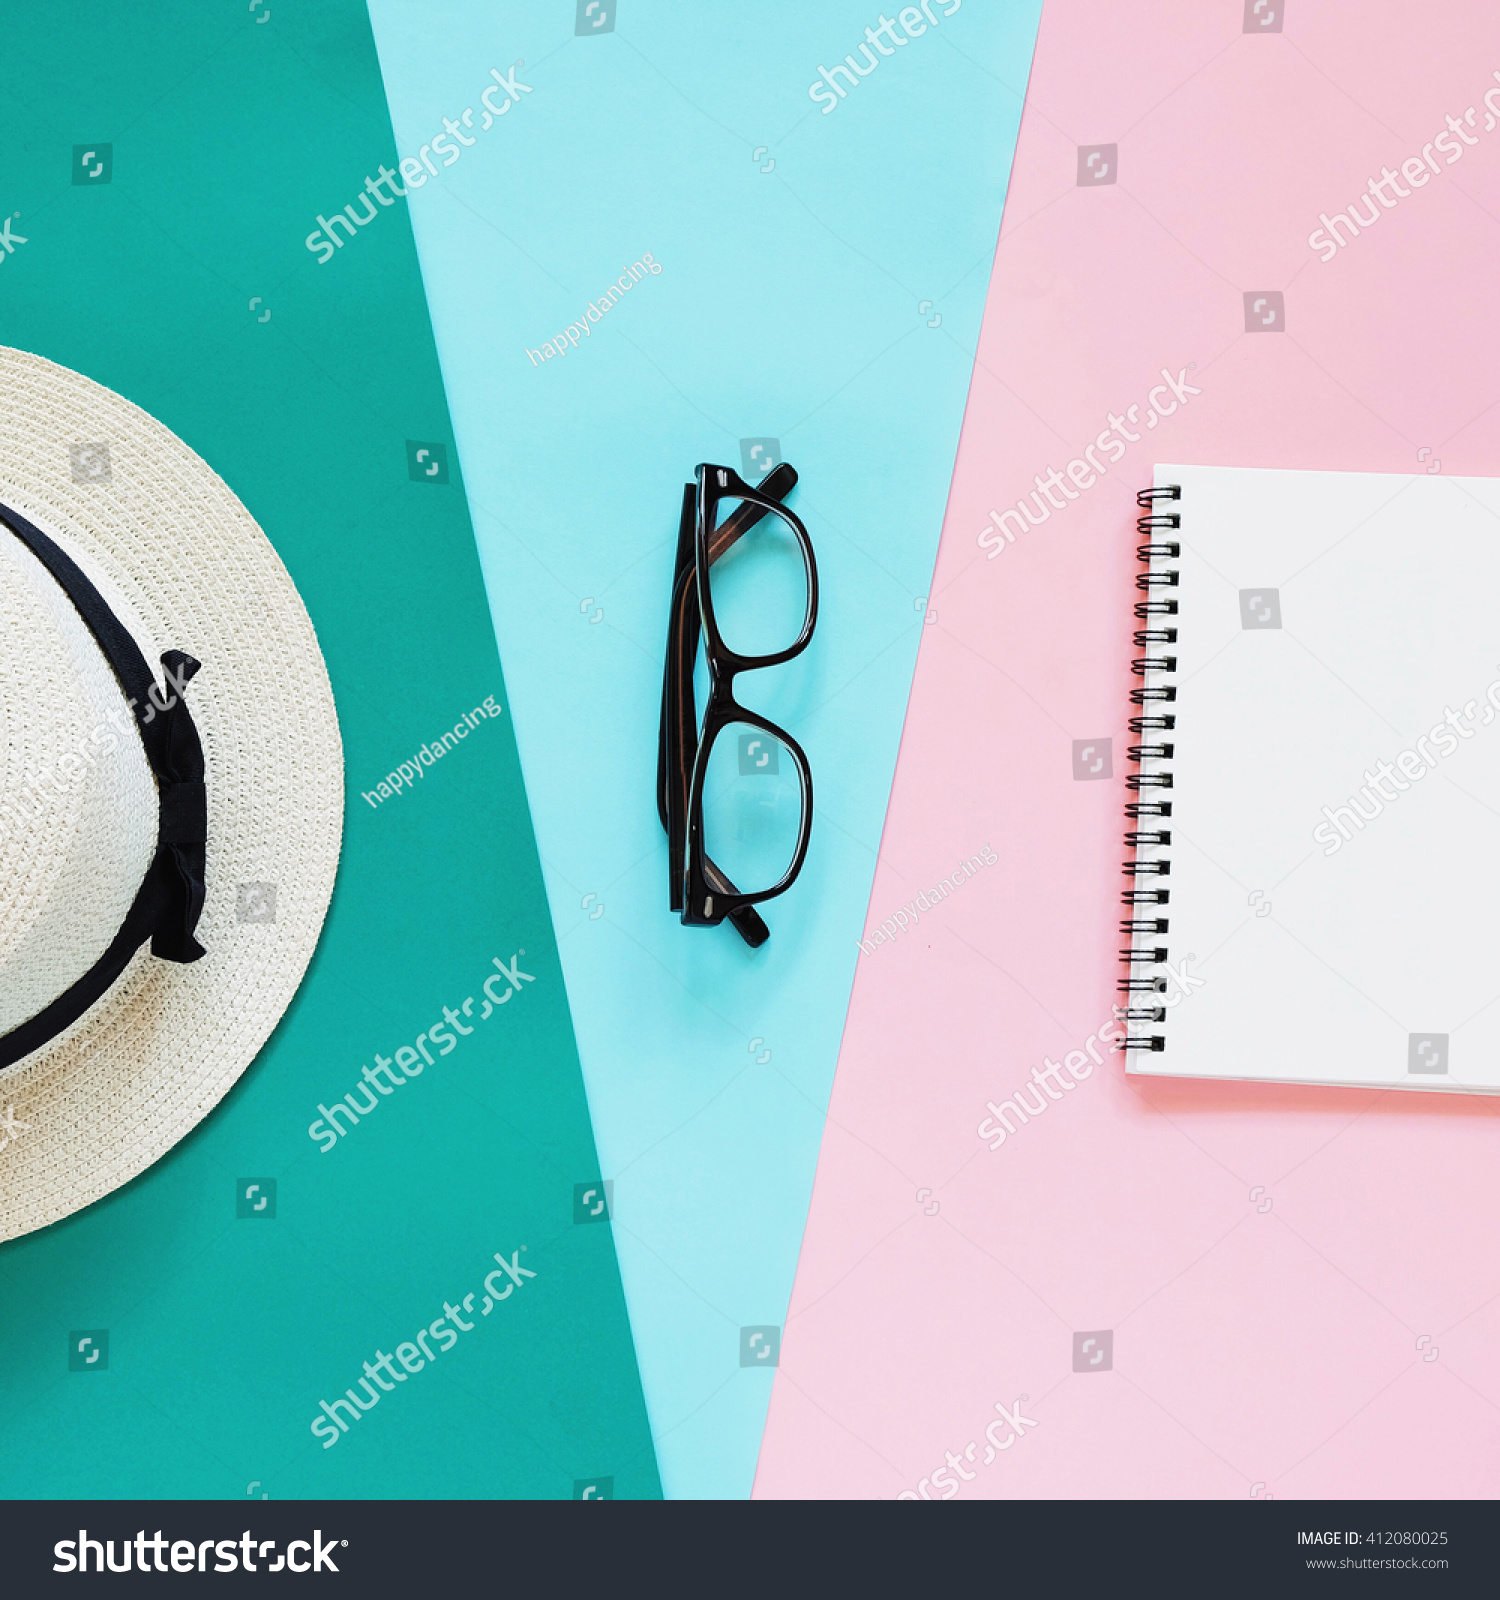 眼镜的照片,巴拿马帽子和笔记本与复制空间背